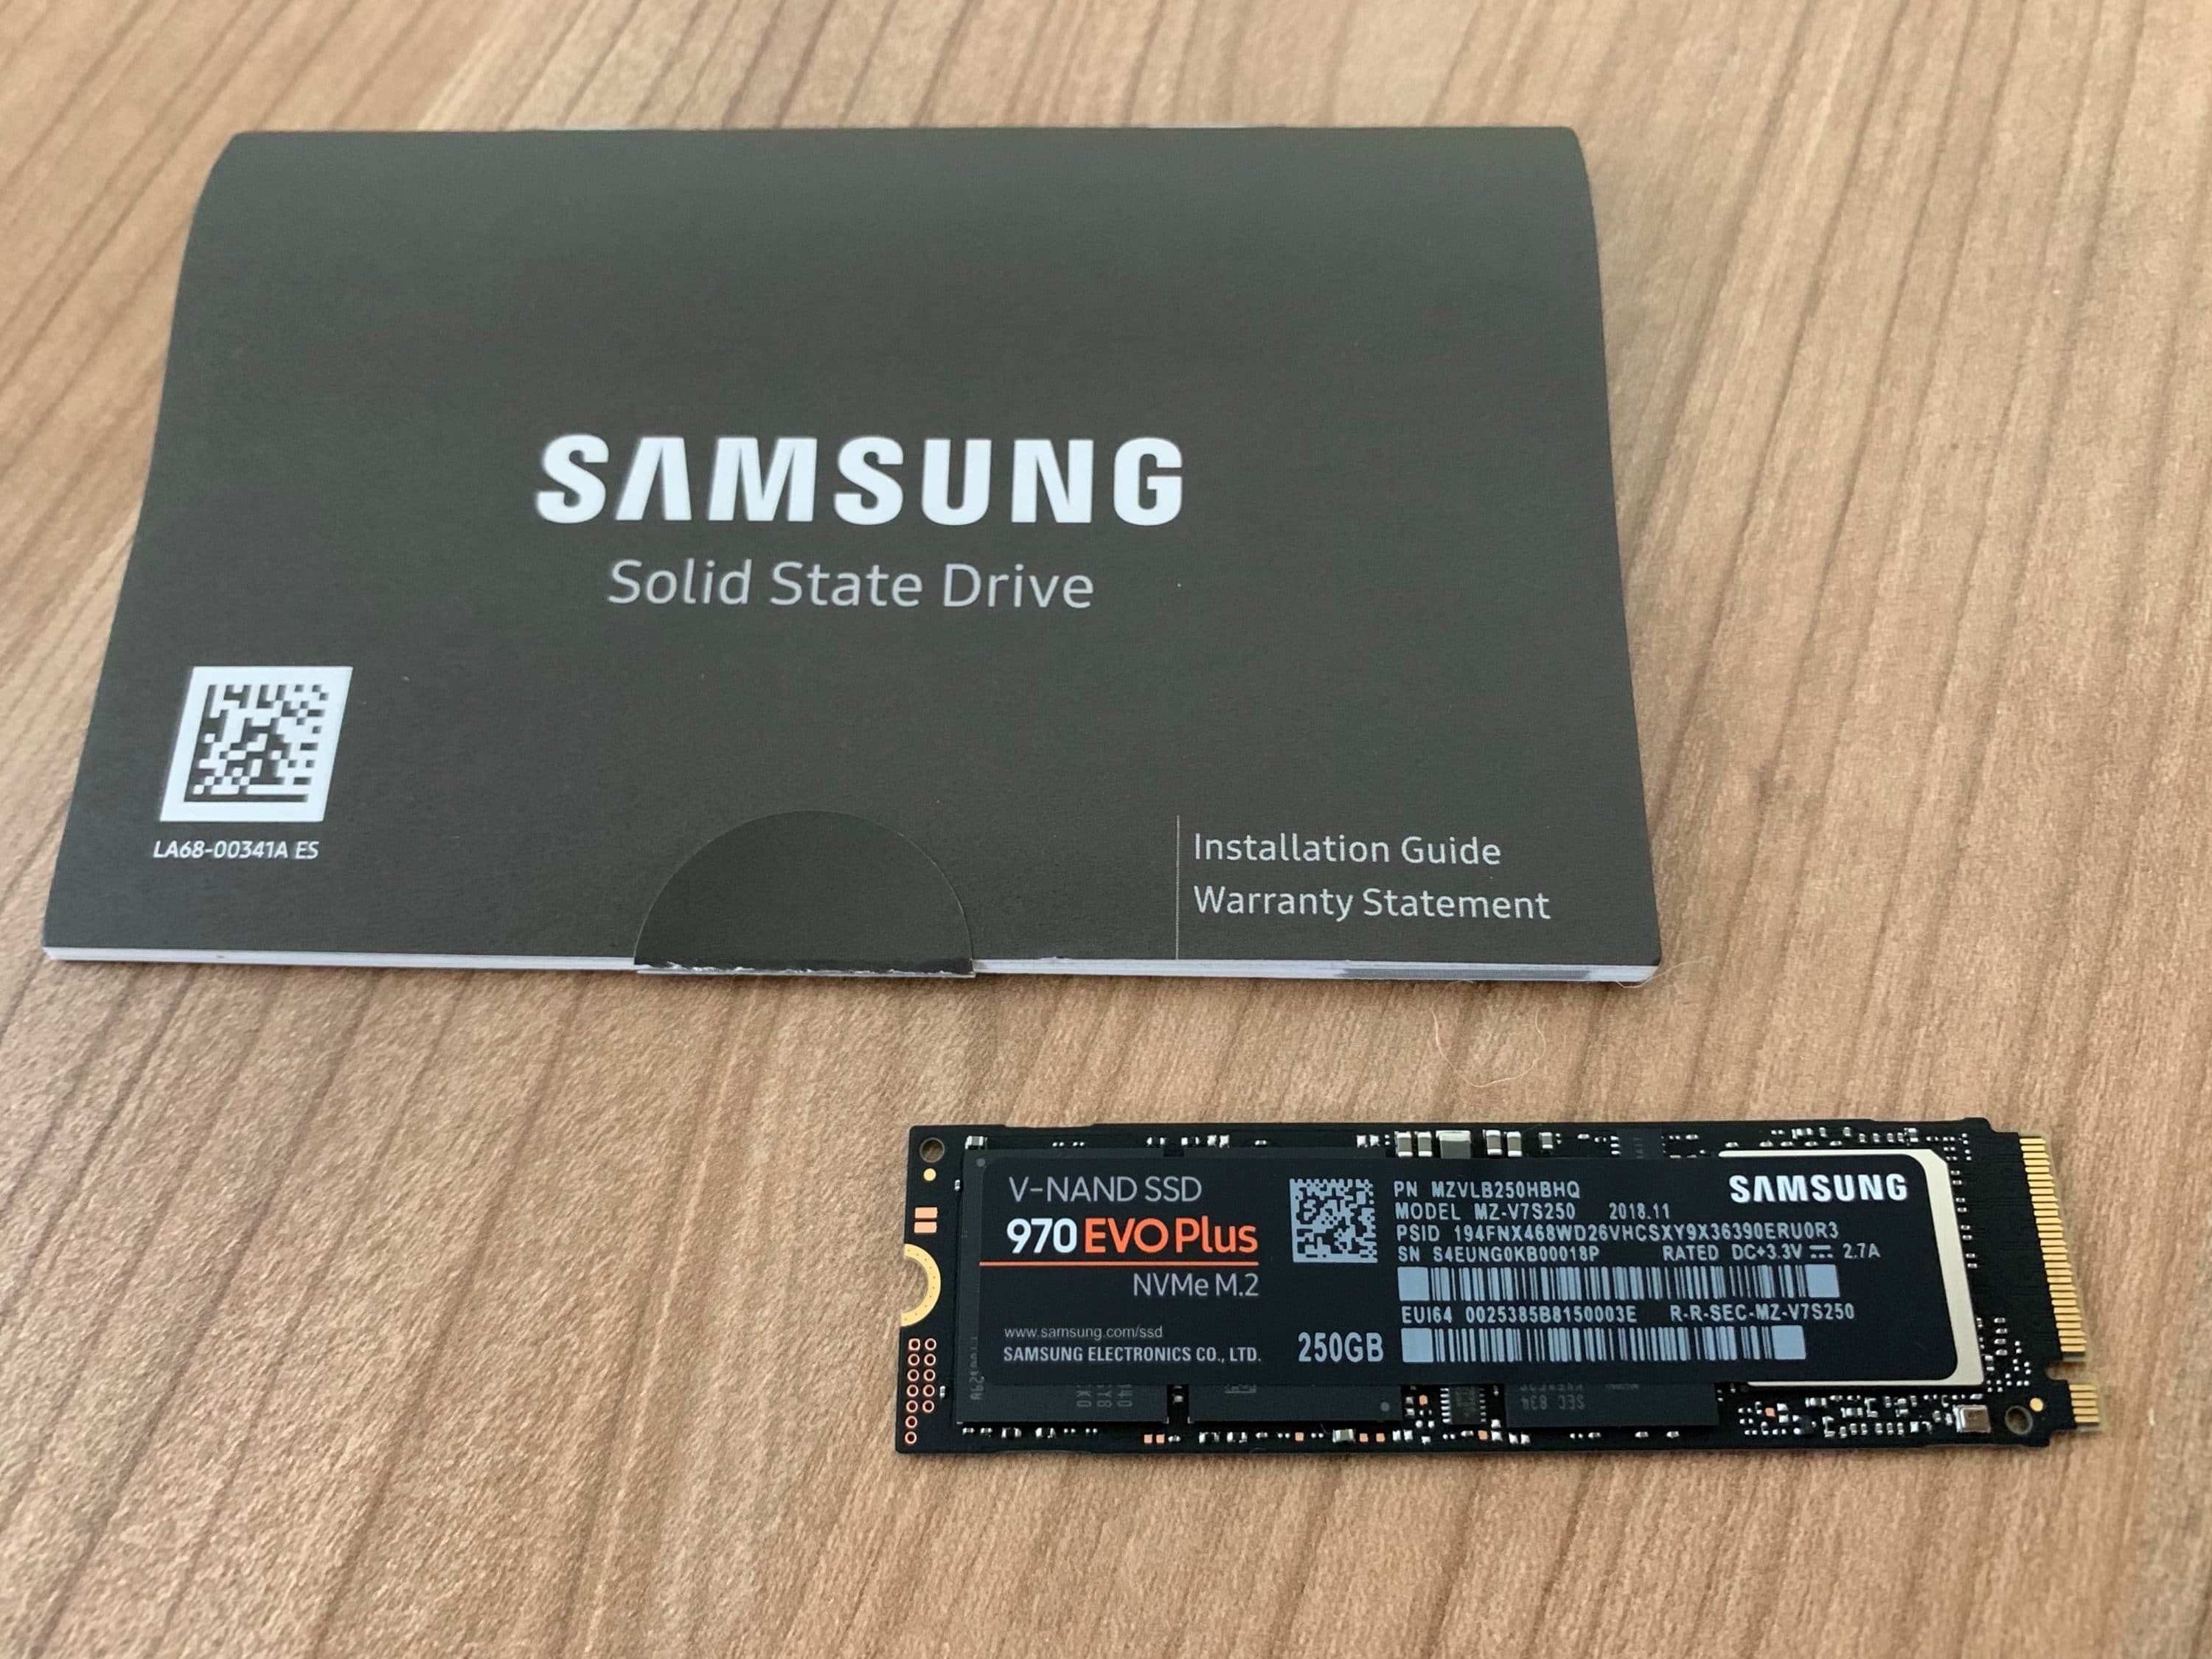 Samsung 970 Evo Plus NVMe SSD, PCIe 3.0 M.2 Typ 2280 - 500 GB